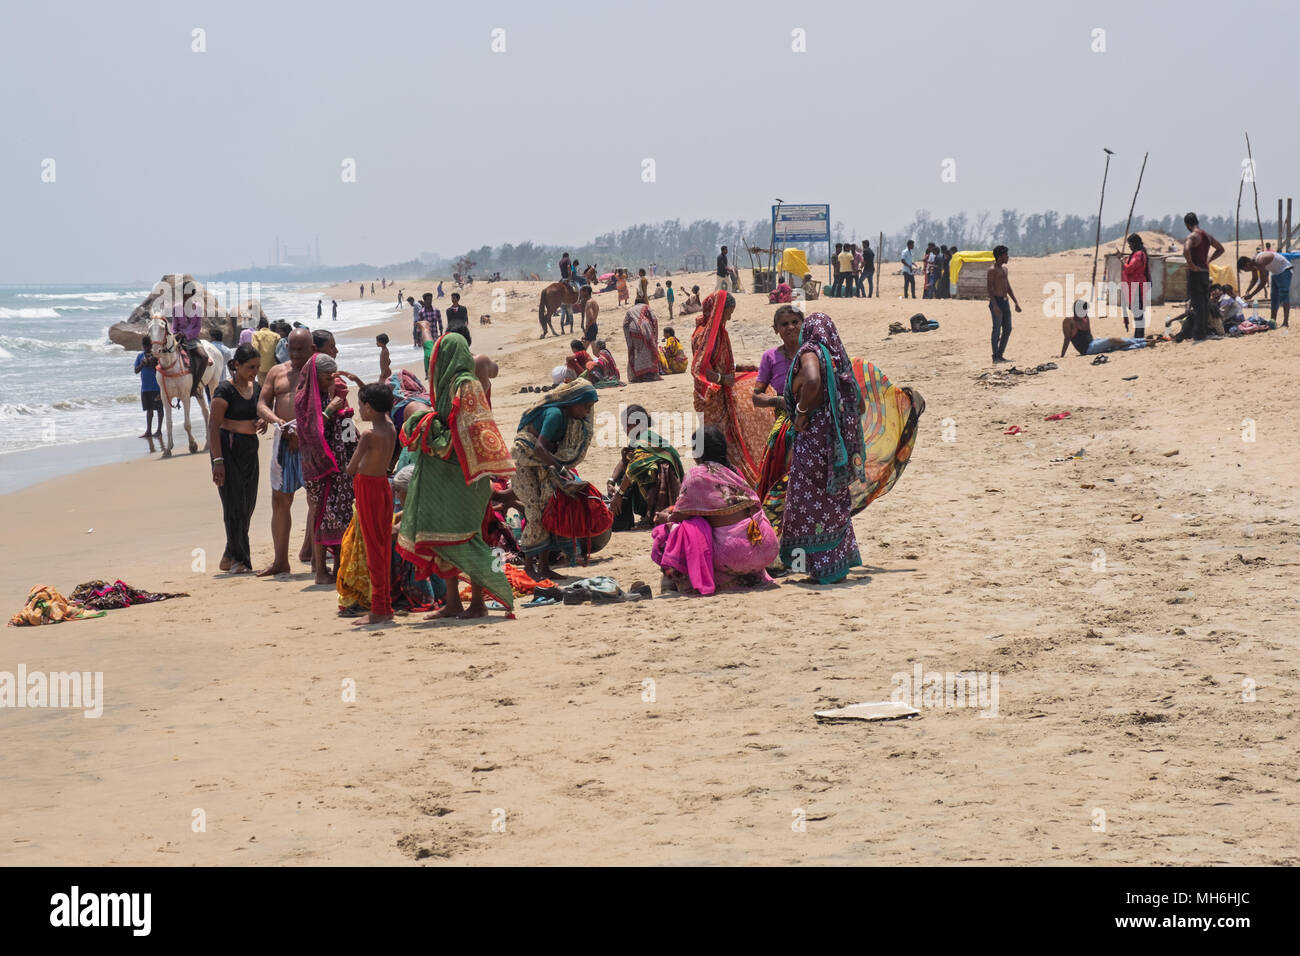 Mahabalipuram, India - 20 Marzo 2018: persone si sono radunate sulla spiaggia per godervi le acque rinfrescanti della Baia del Bengala sulla costa di Coromandel Foto Stock